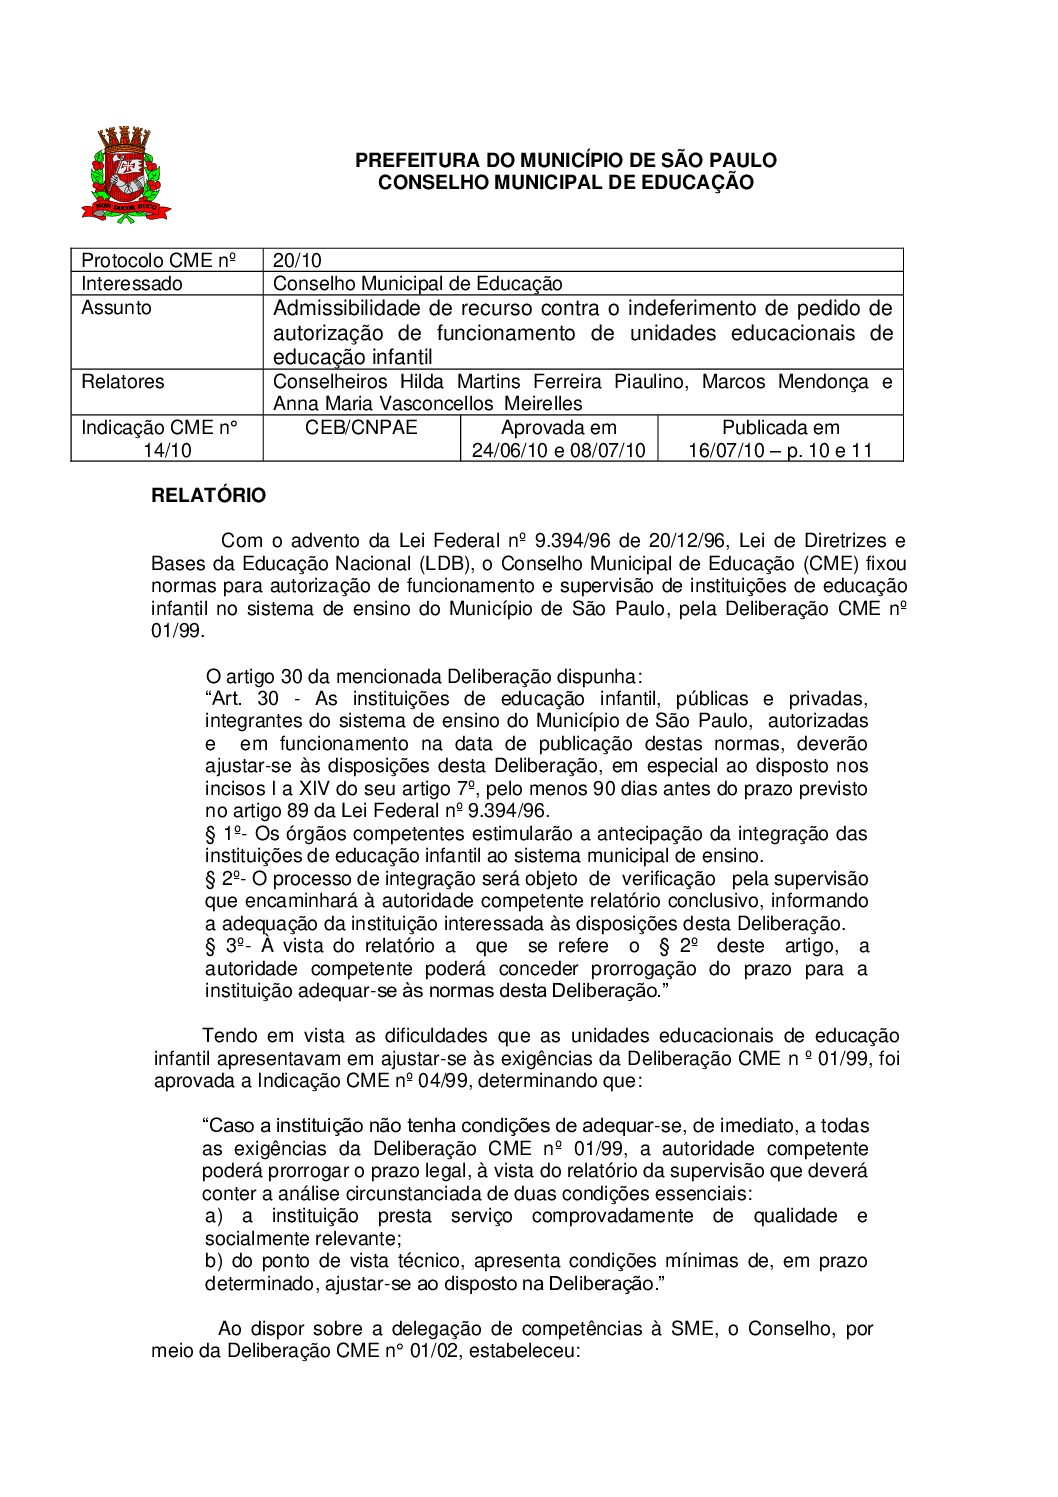 Indicação CME nº 14/2010 - Admissibilidade de recurso contra o indeferimento de pedido de autorização de funcionamento de unidades educacionais de educação infantil 